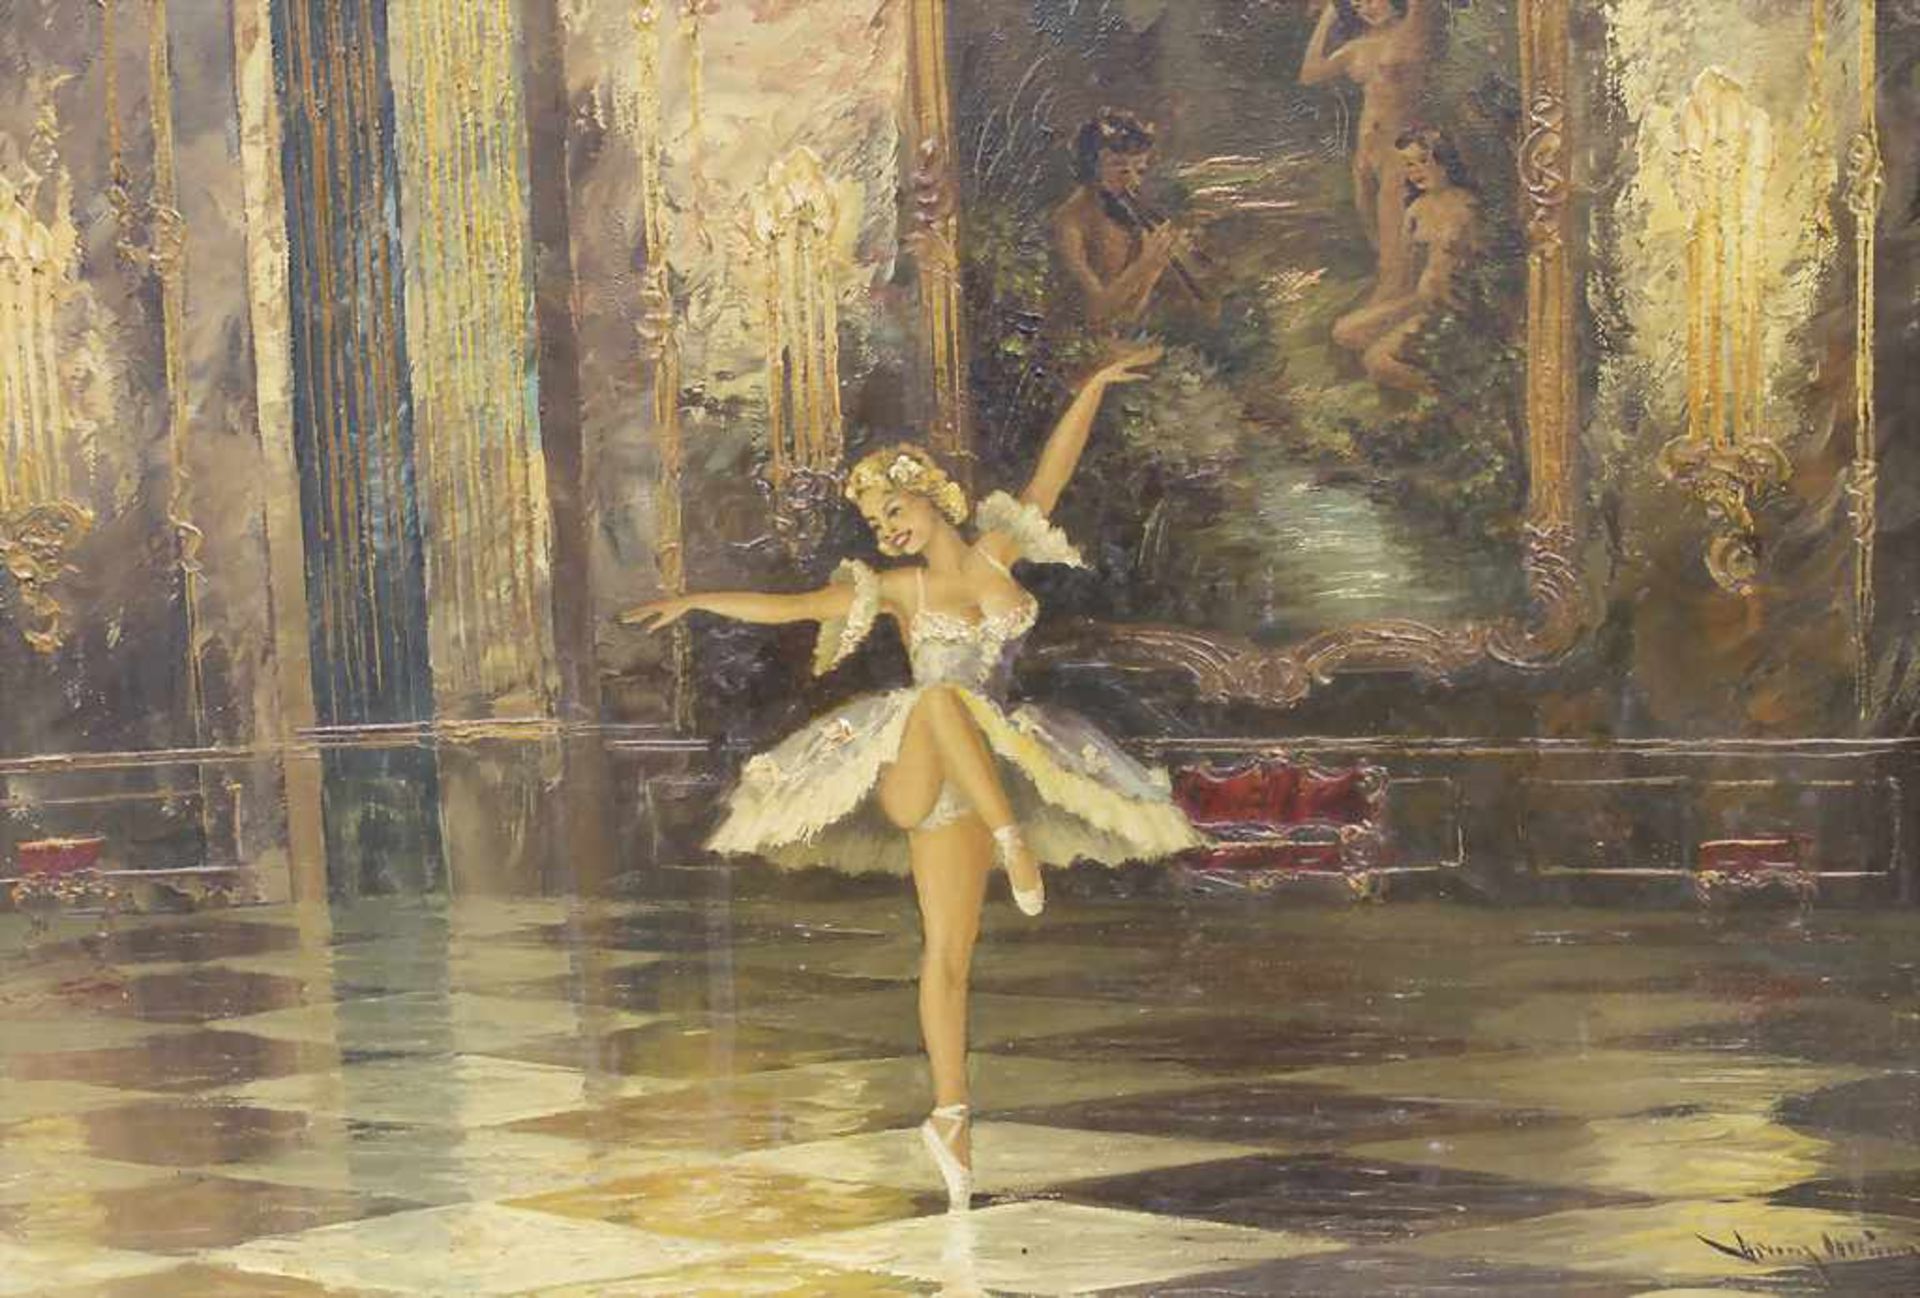 Unleserlich signierender Künstler, 'Ballerina im Barocksaal' / 'Ballerina in Baroque Hall' - Bild 3 aus 5